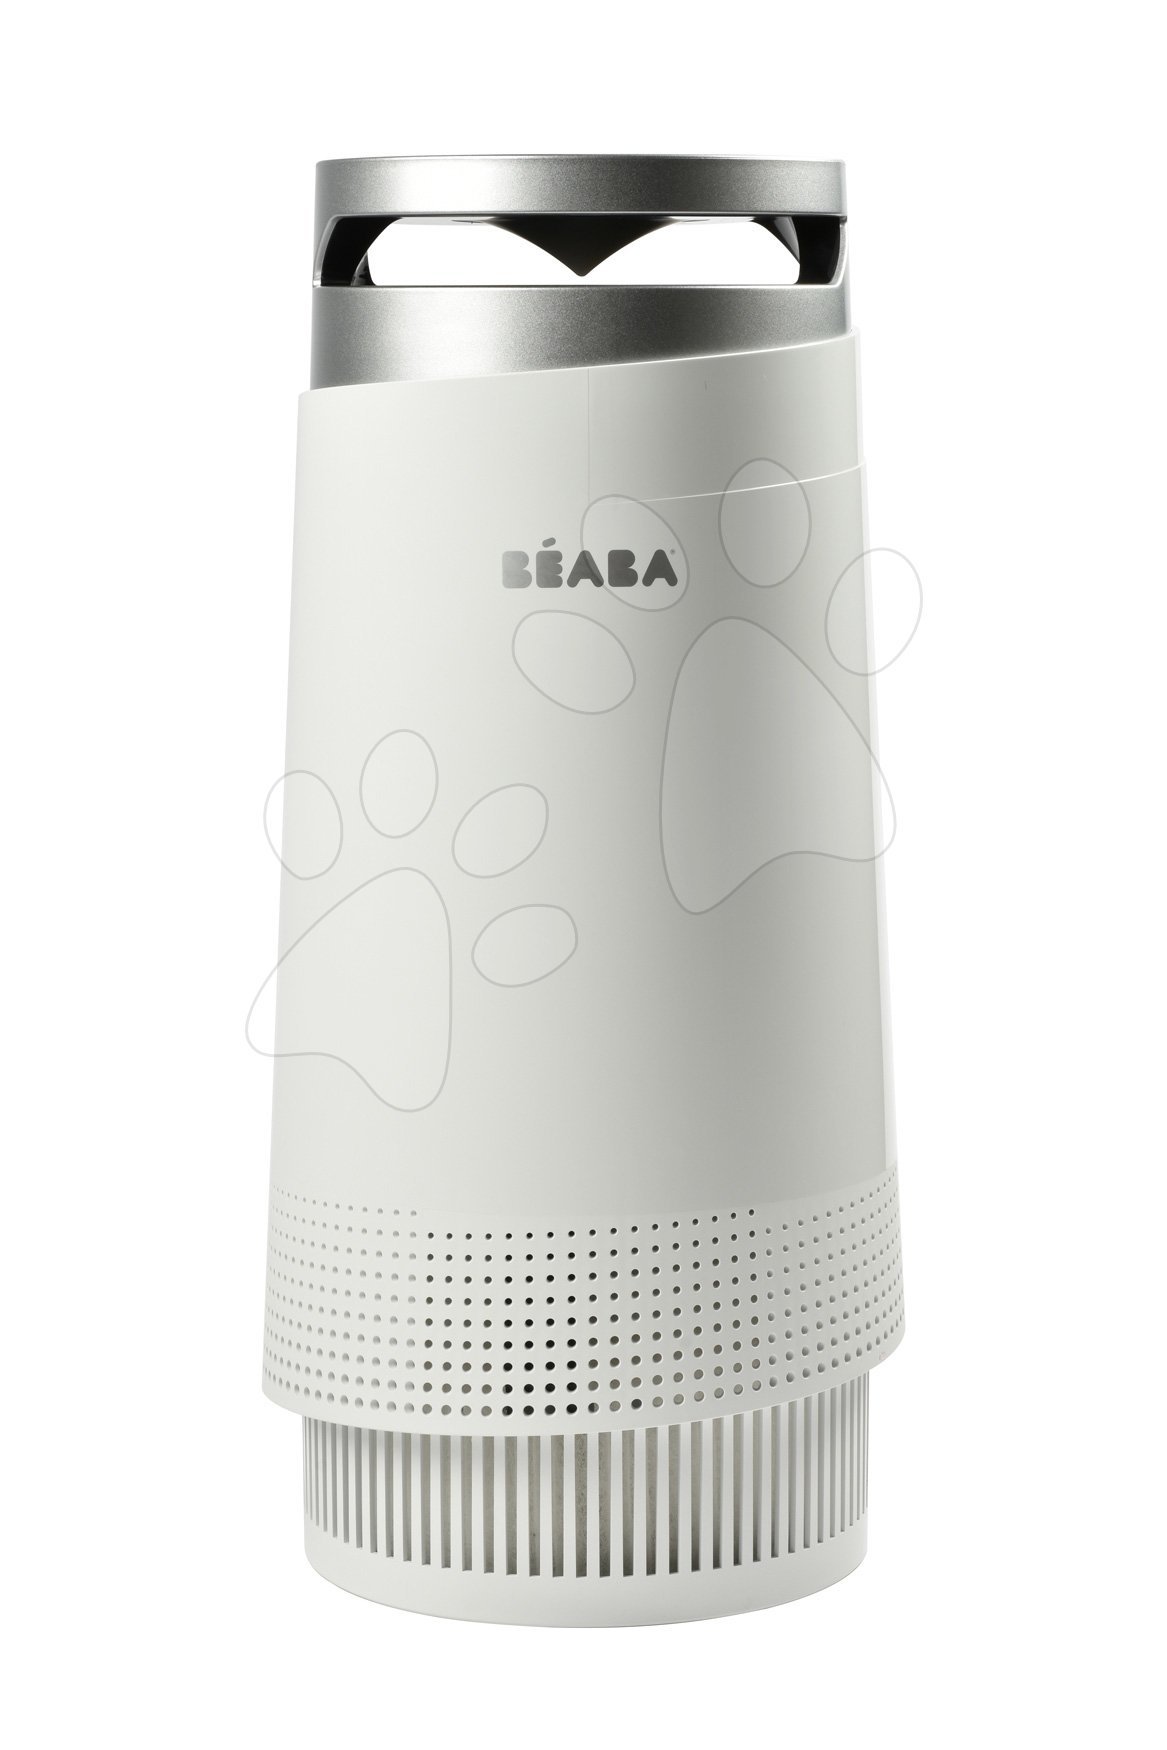 Čističky vzduchu a zvlhčovače - Čistička vzduchu Air Purifier Beaba ultra tichá 3stupňový filtr s 99,9% účinností od 0 měsíců